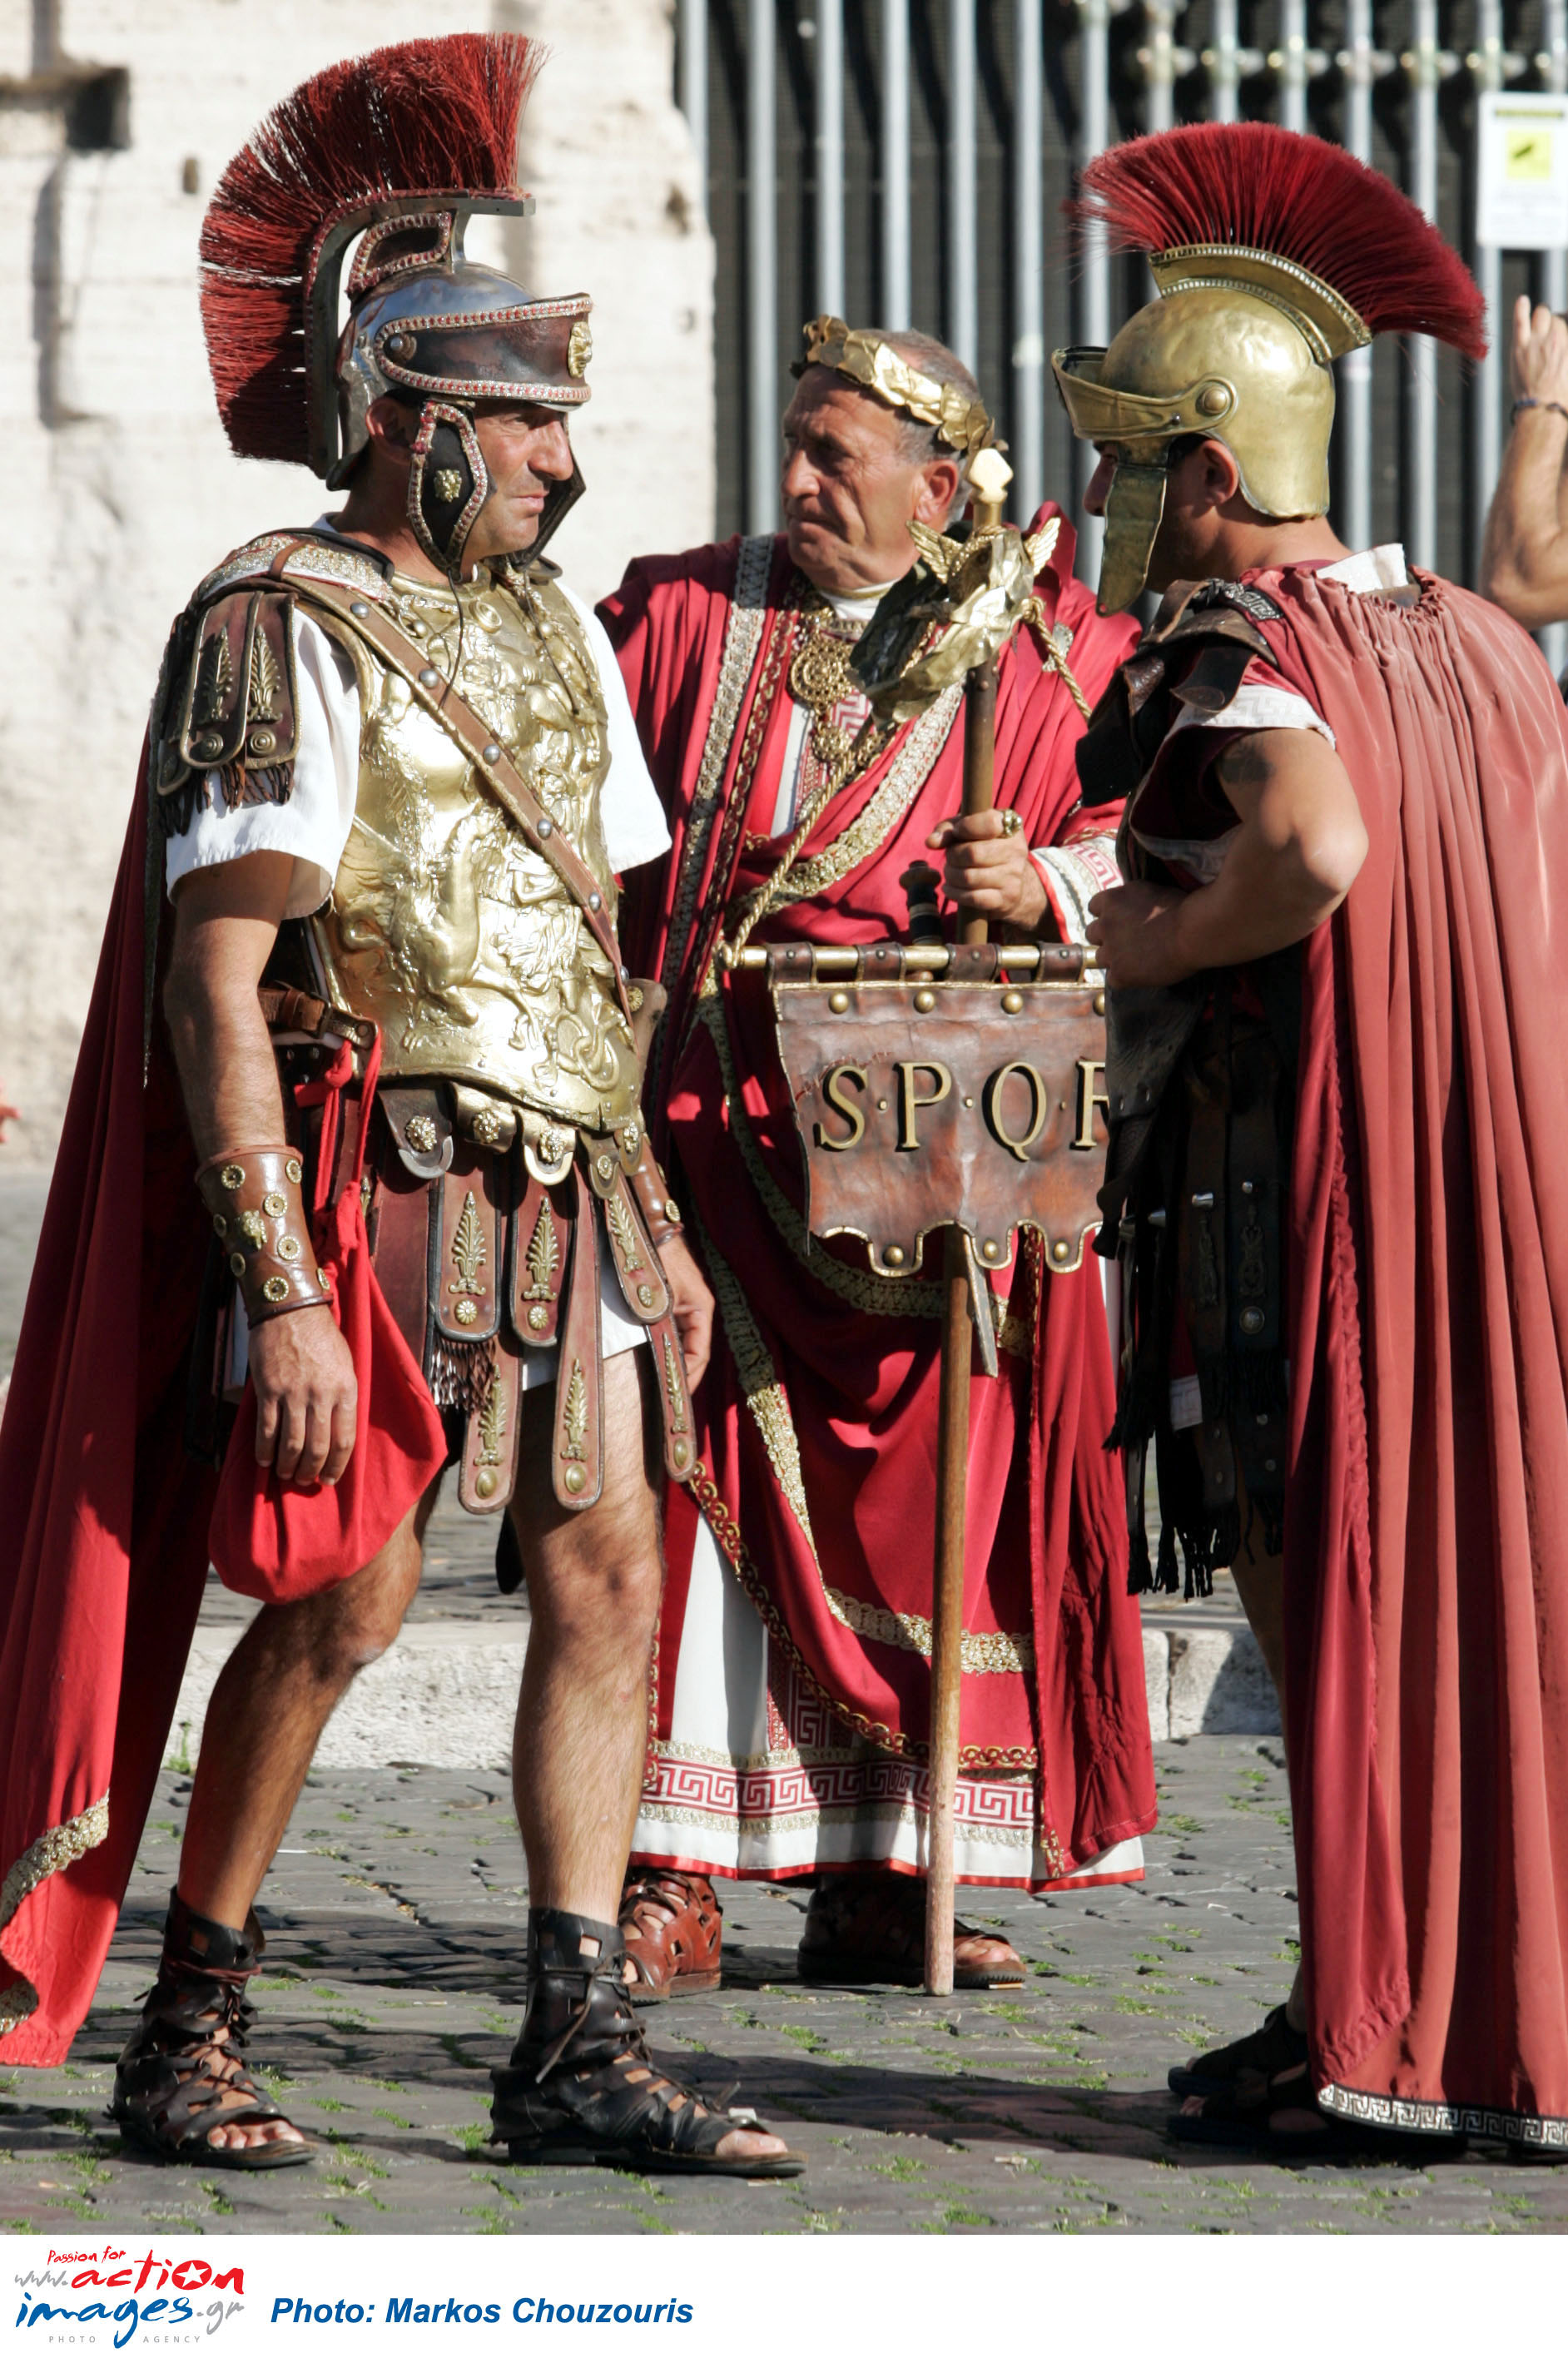 Χολιγουντιανές ανοησίες οι κόκκινες στολές των ρωμαίων εκατόνταρχων